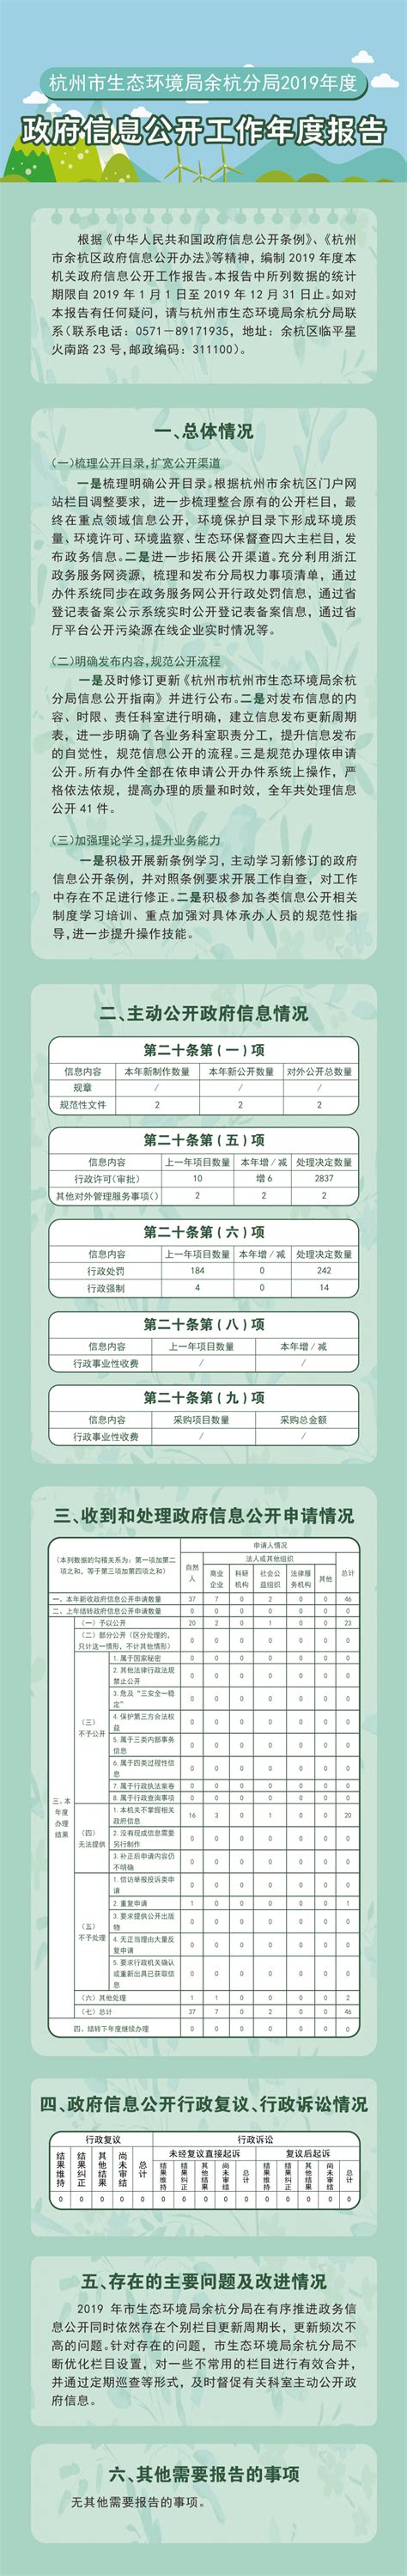 杭州市生态环境局余杭分局2019年政府信息公开工作年度报告